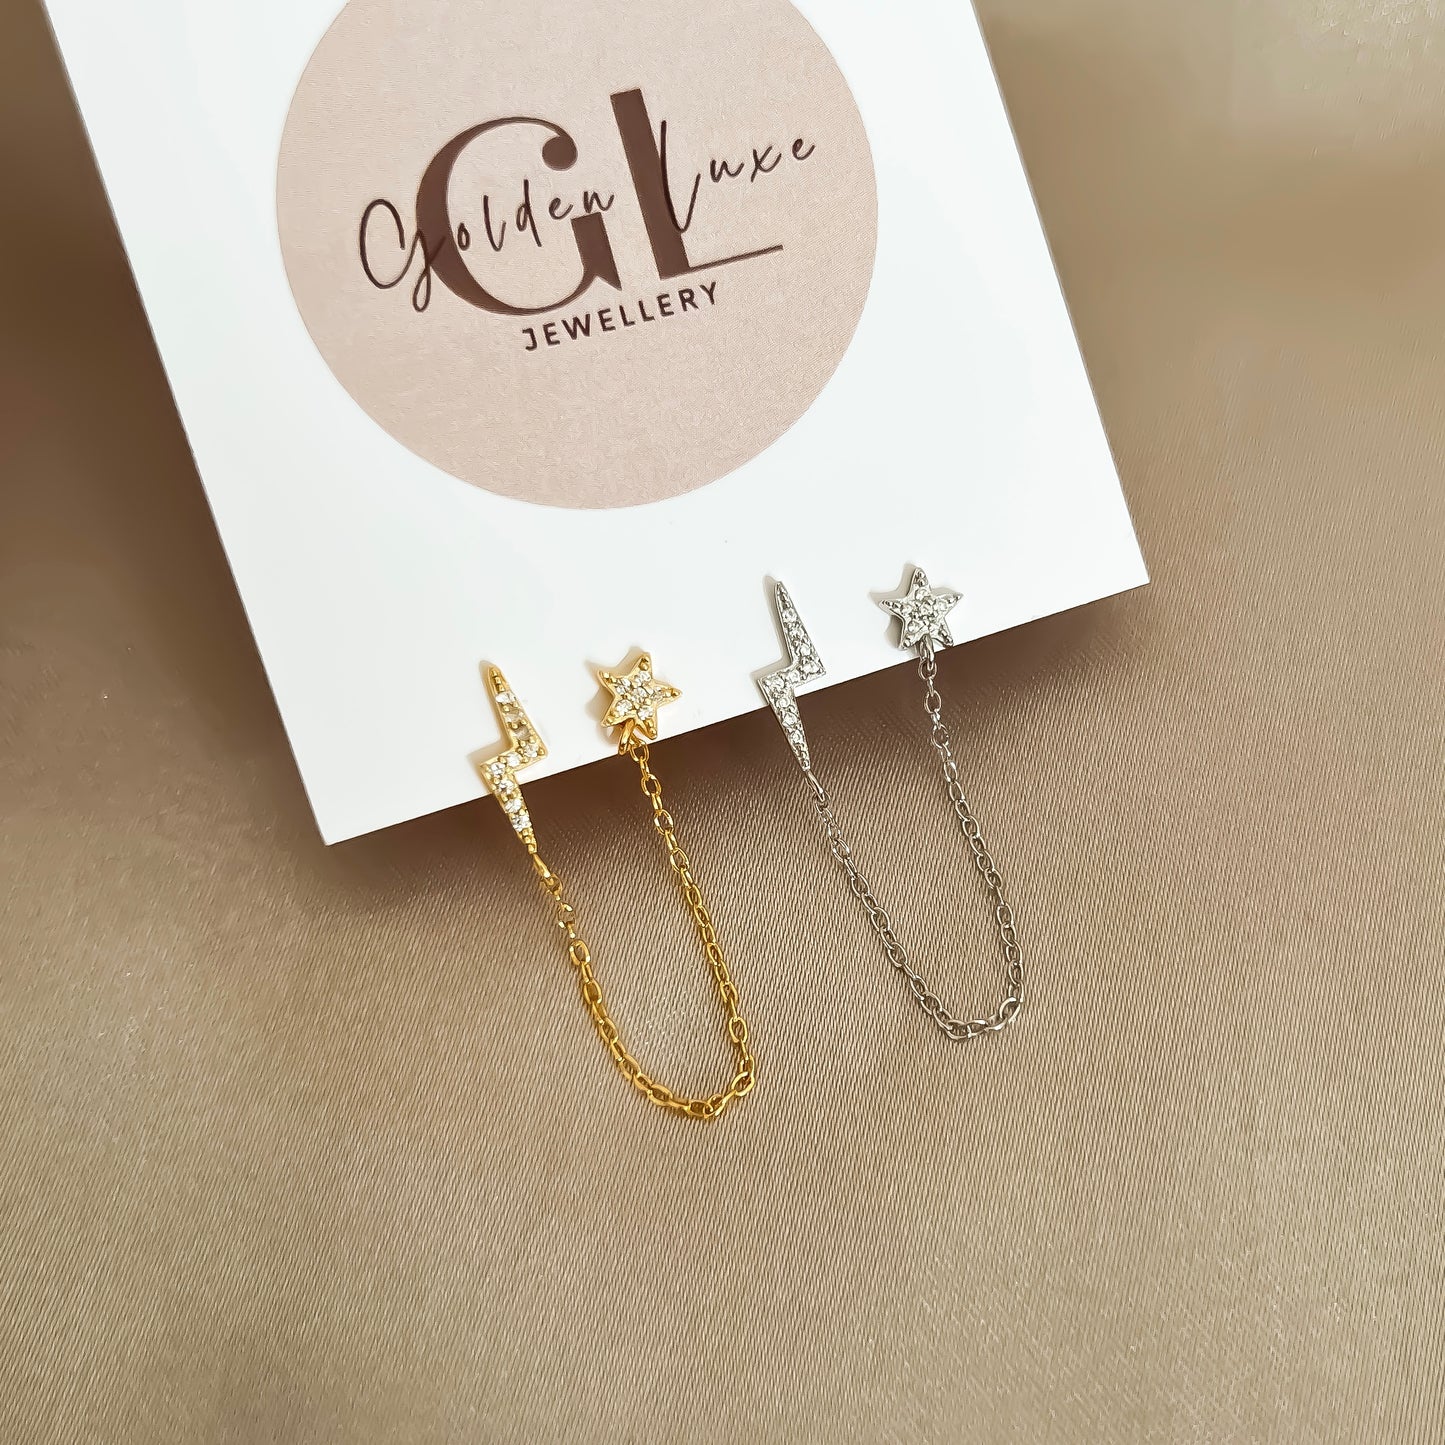 Celestial Chain Earrings